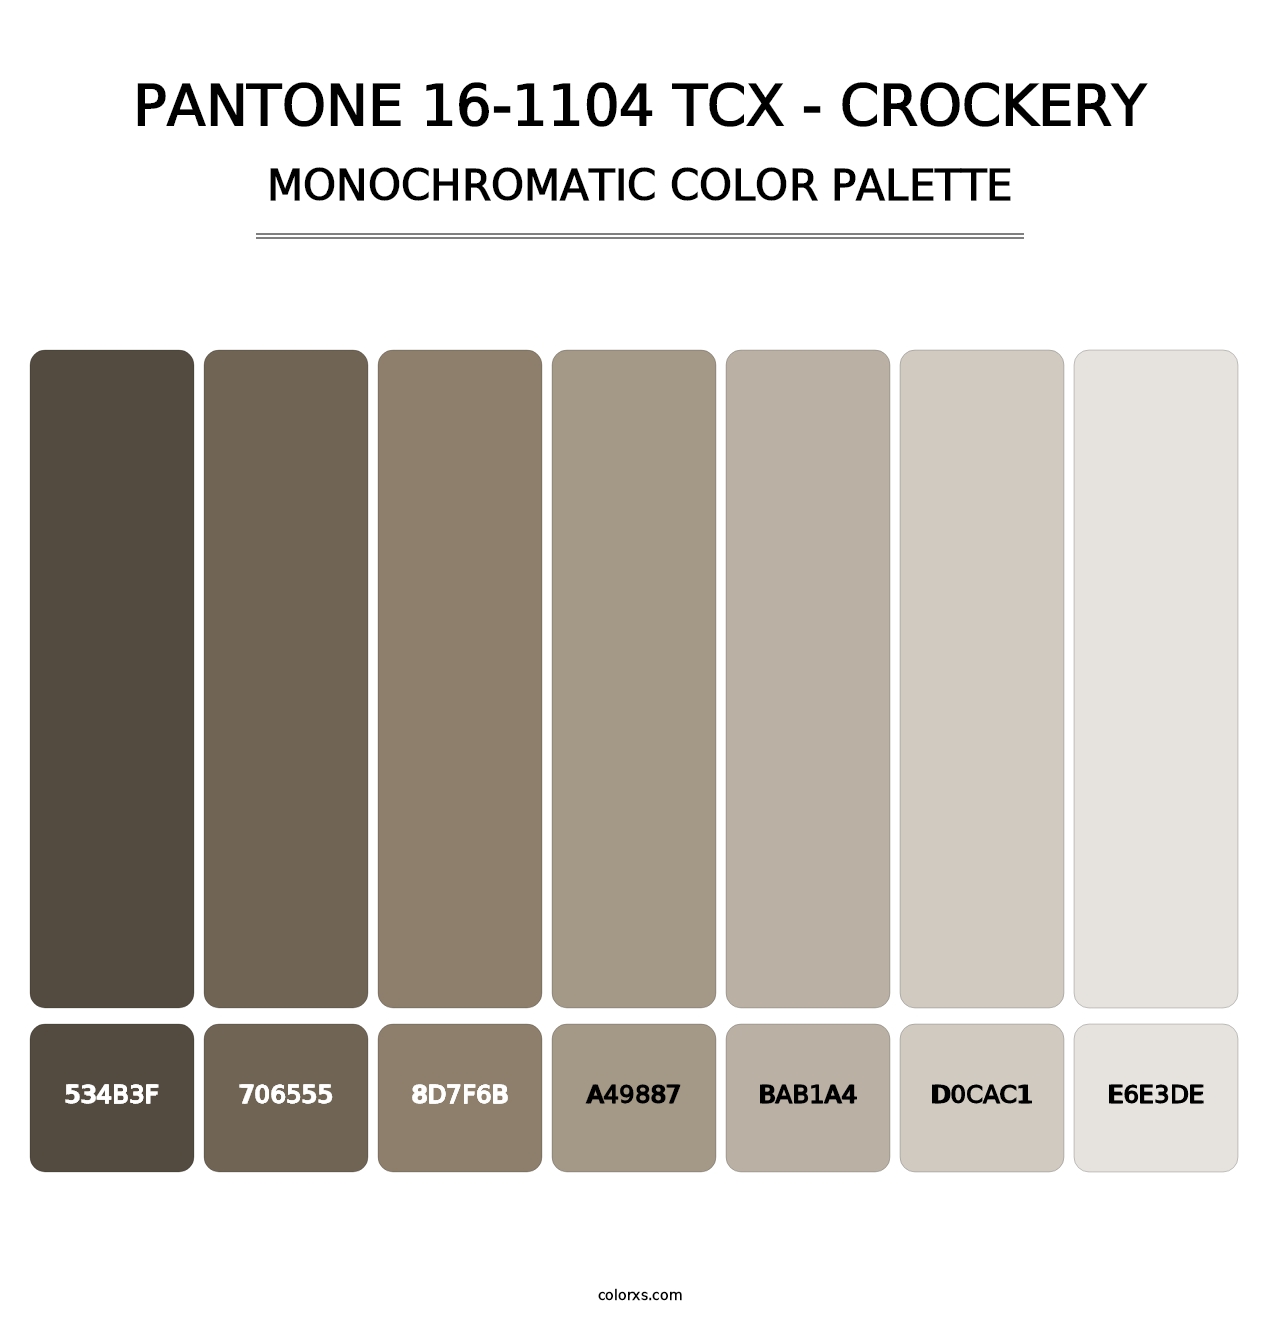 PANTONE 16-1104 TCX - Crockery - Monochromatic Color Palette